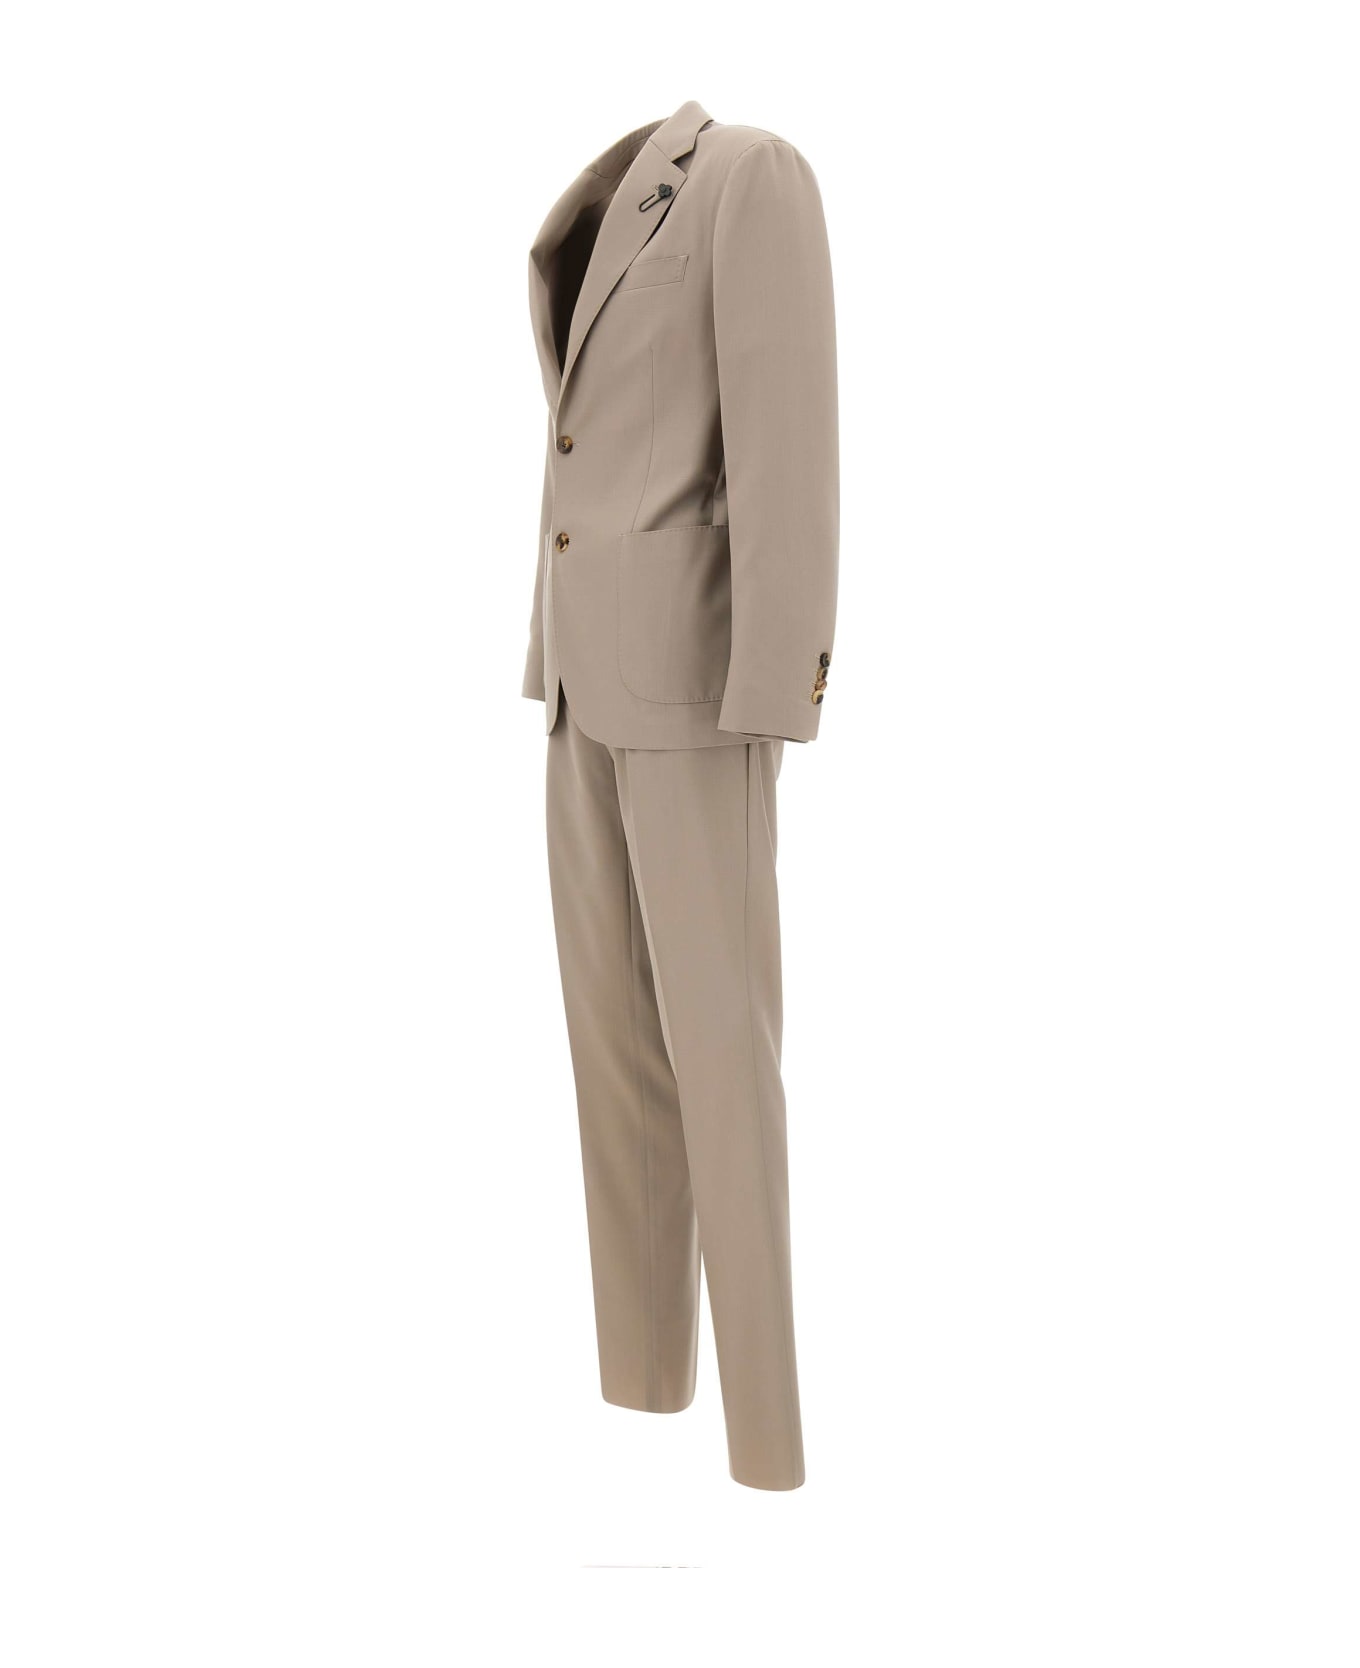 Lardini Fresh Wool Two-piece Suit - BEIGE スーツ